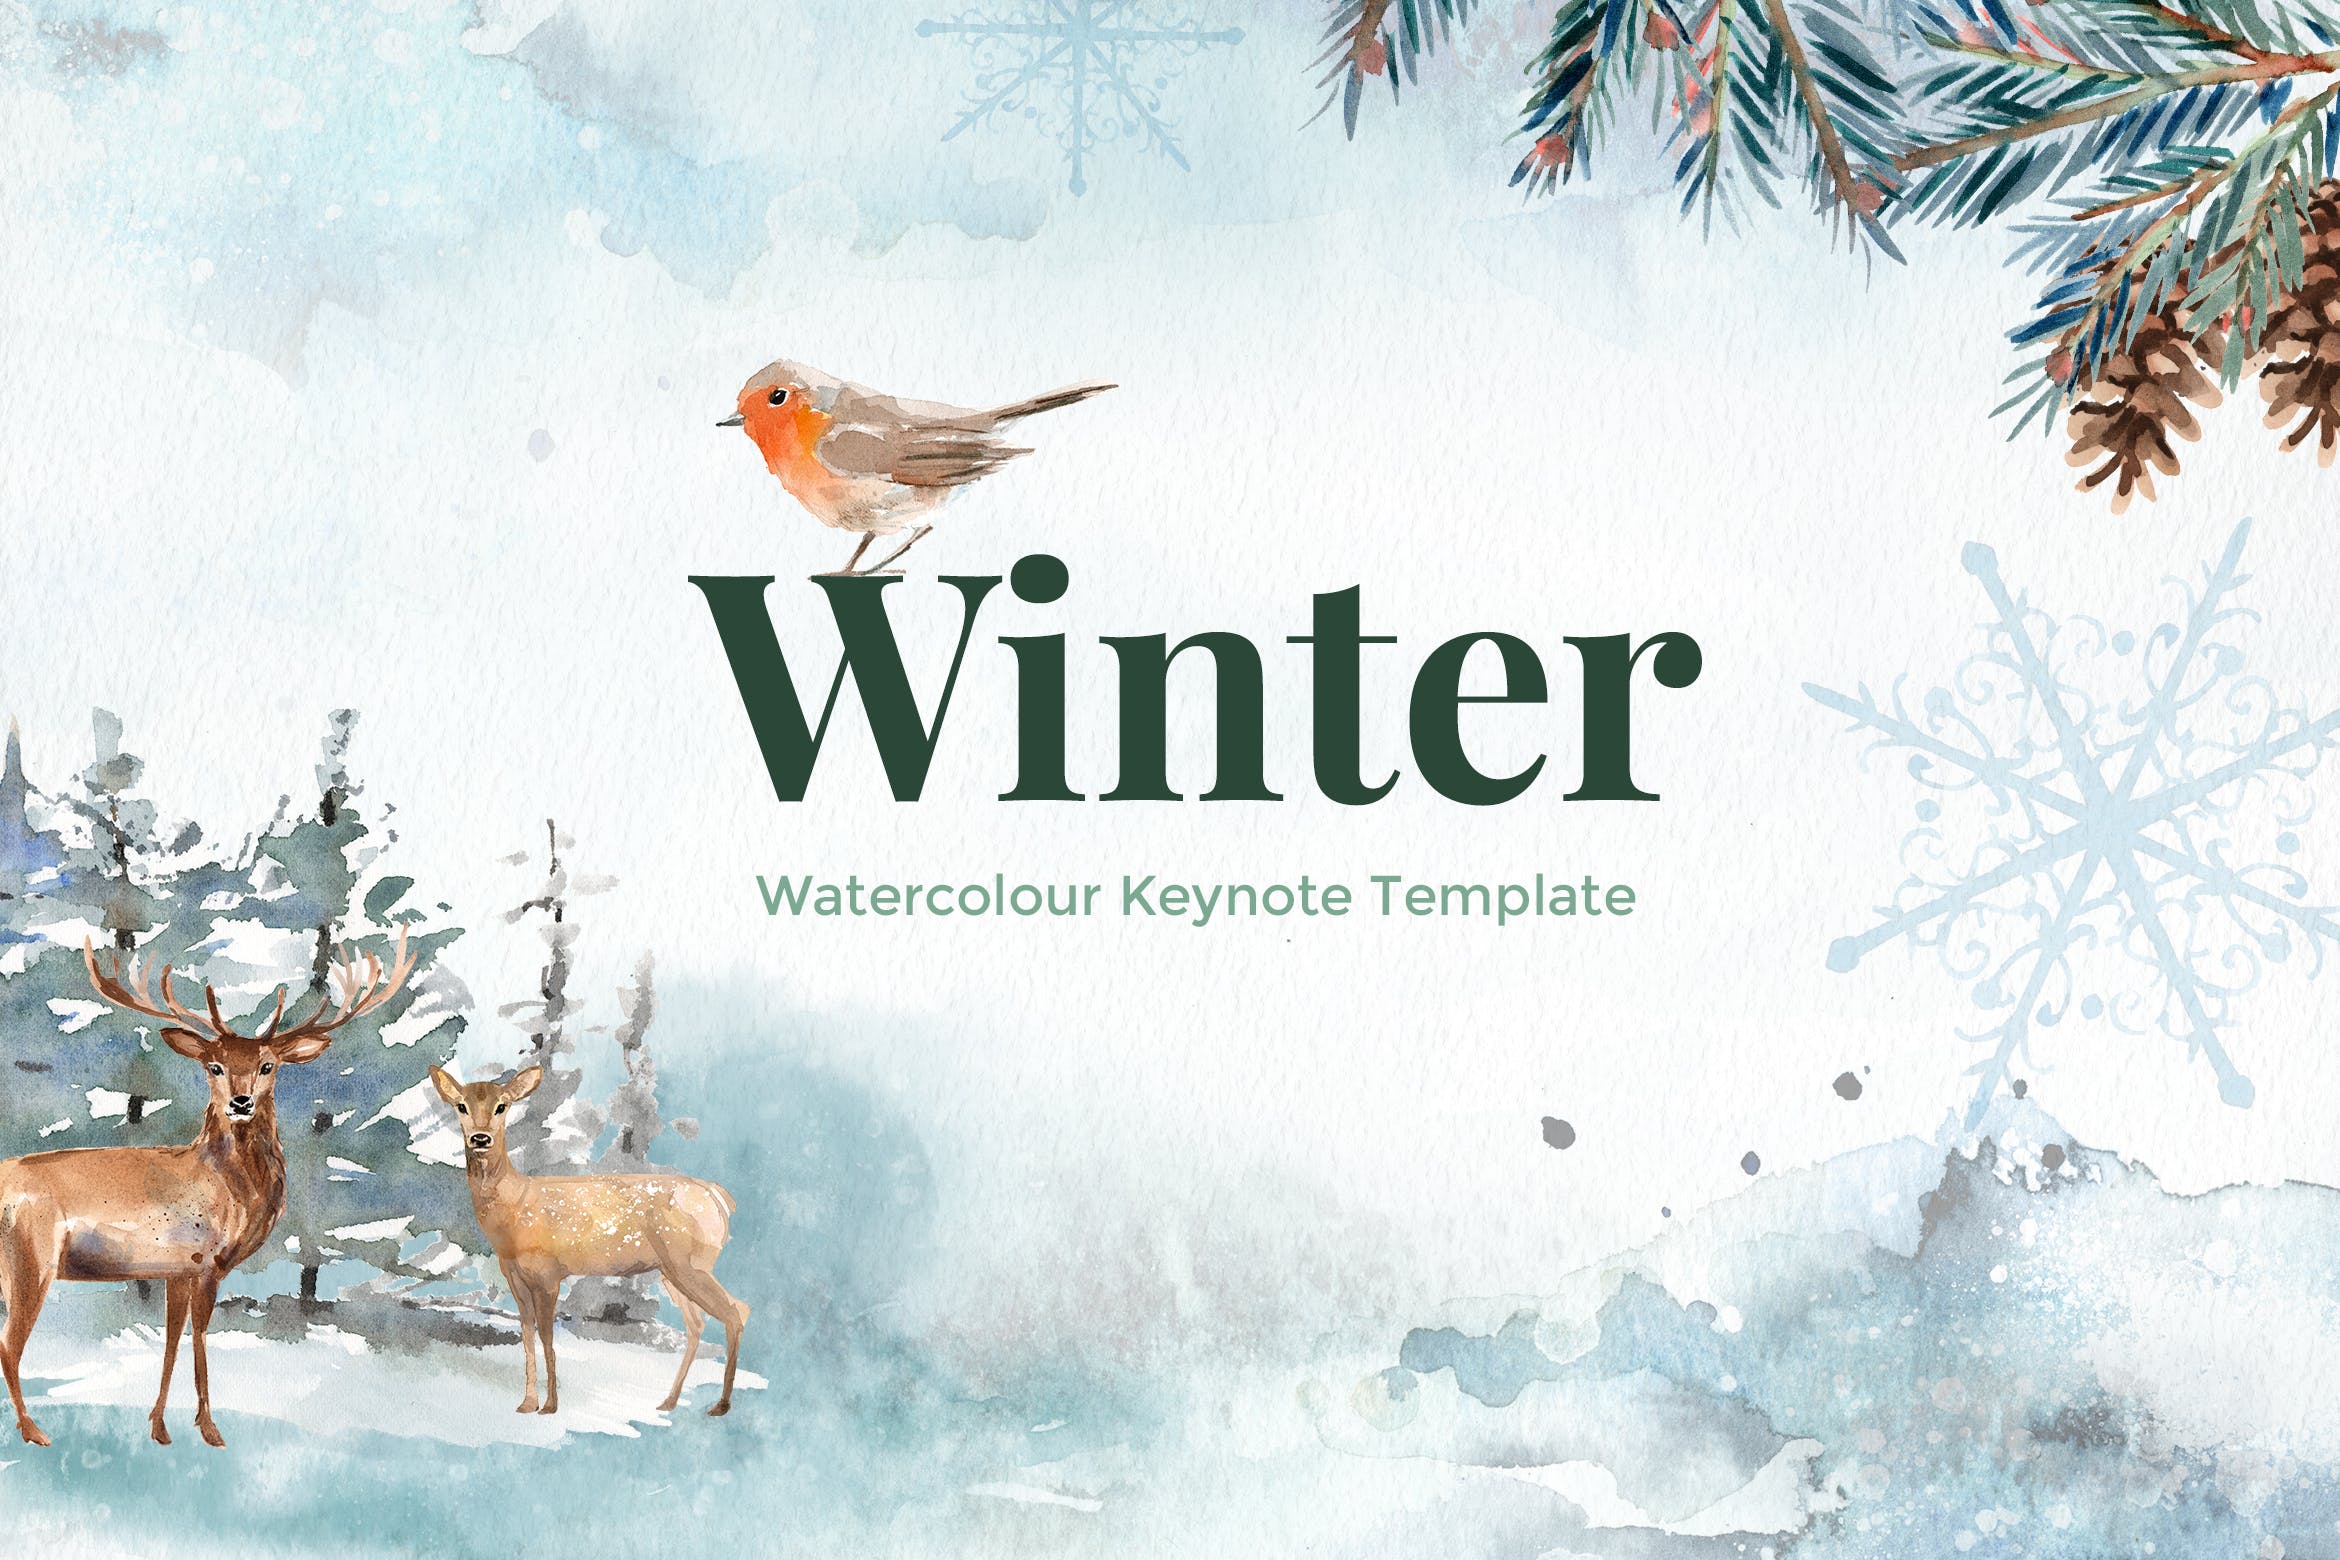 冬天主题水彩手绘元素非凡图库精选Keynote模板 Winter – Watercolour Keynote Template插图